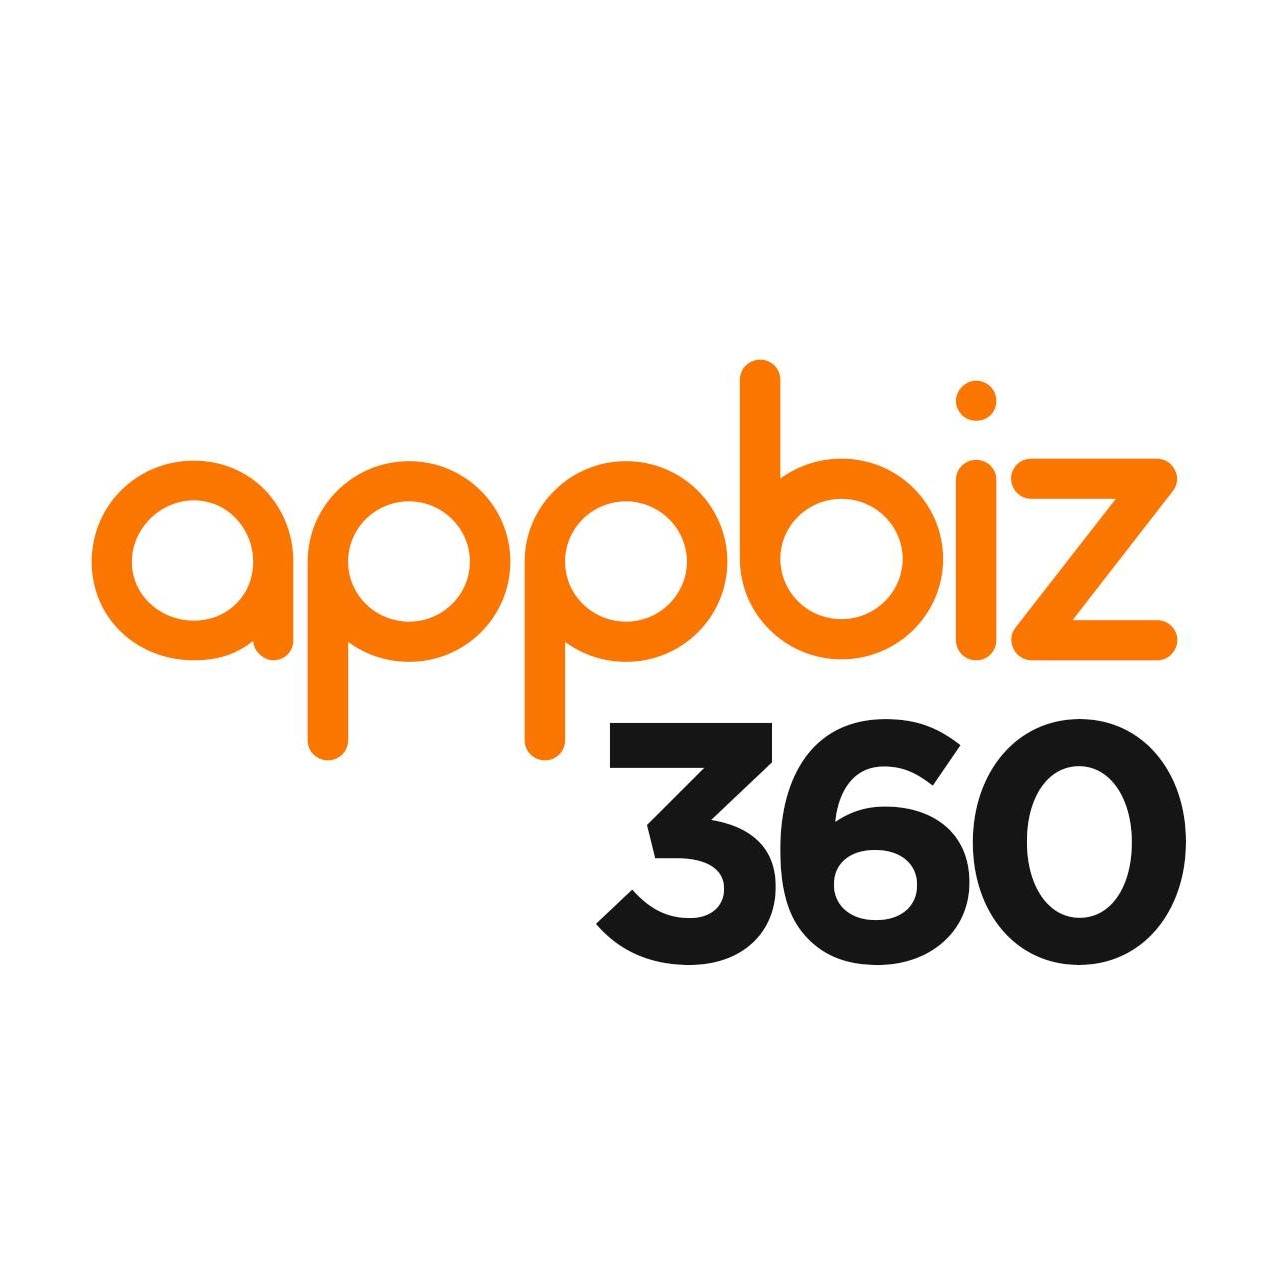 appbiz360